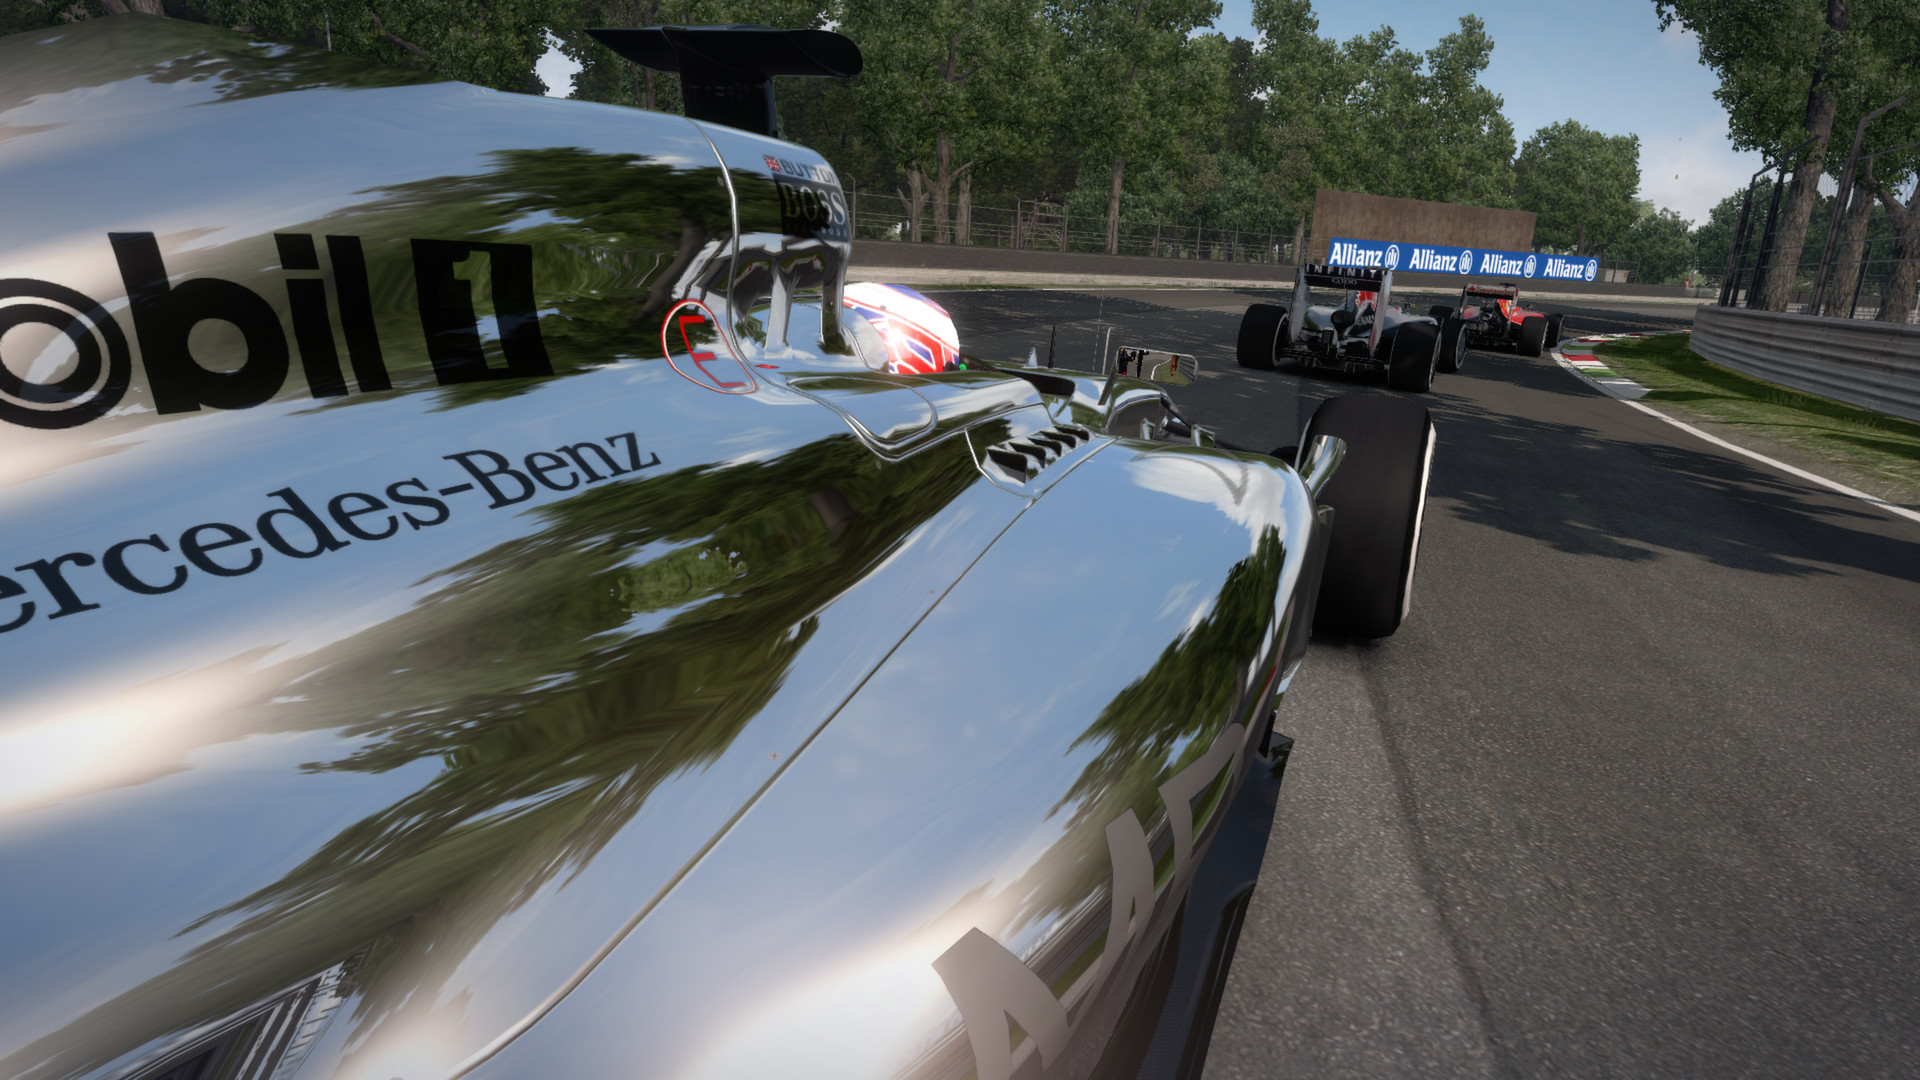 F1 2014 screenshot